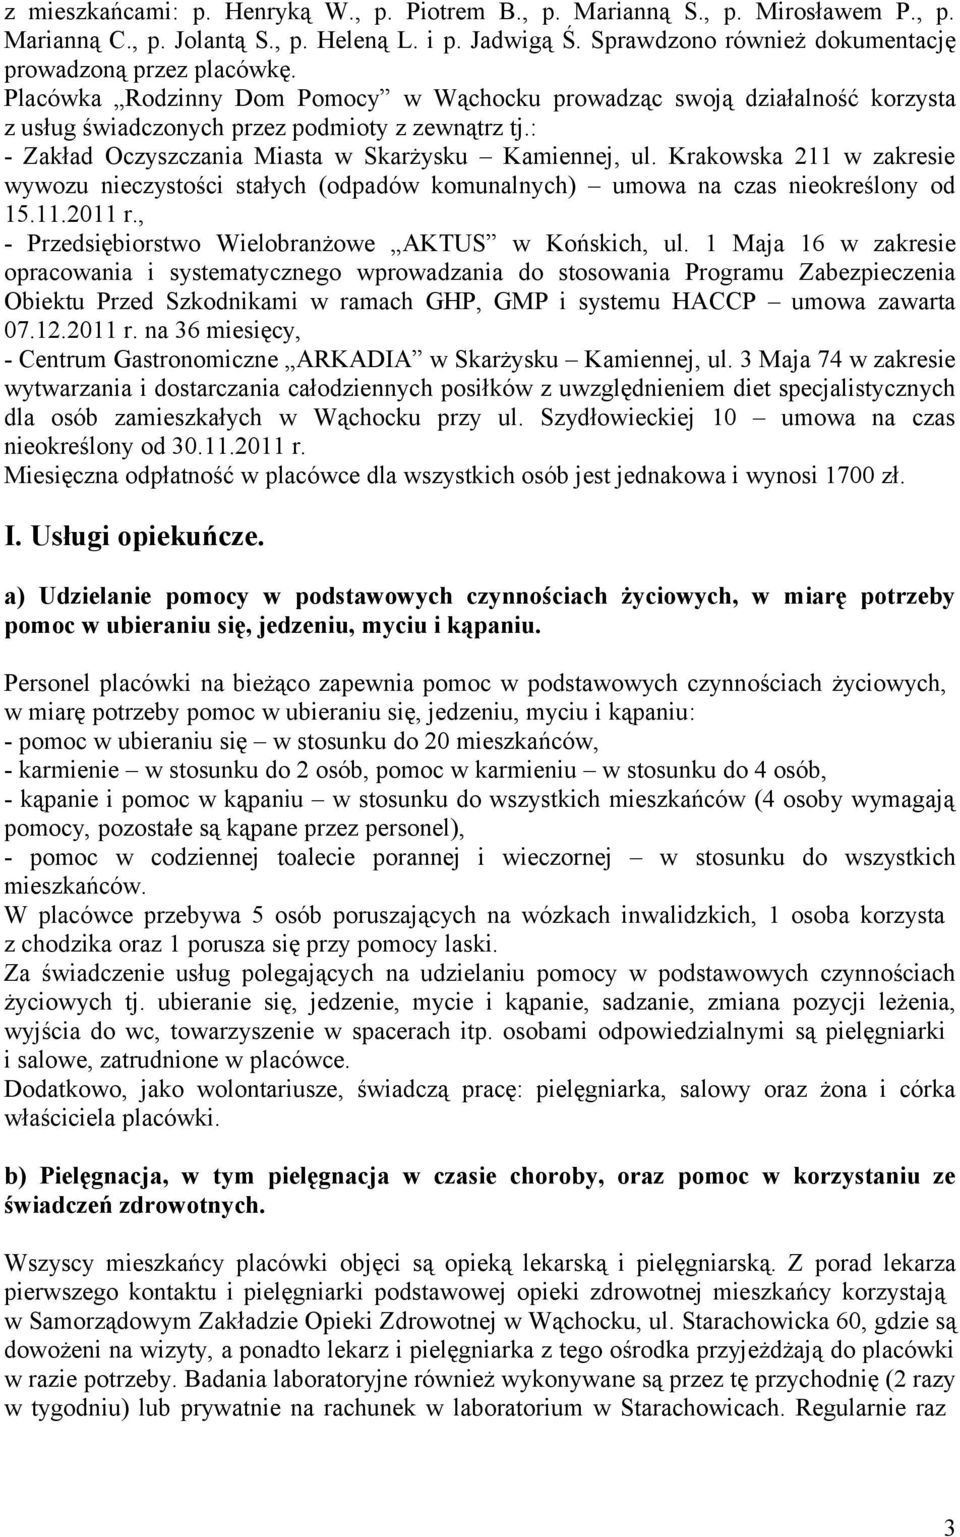 Krakowska 211 w zakresie wywozu nieczystości stałych (odpadów komunalnych) umowa na czas nieokreślony od 15.11.2011 r., - Przedsiębiorstwo Wielobranżowe AKTUS w Końskich, ul.